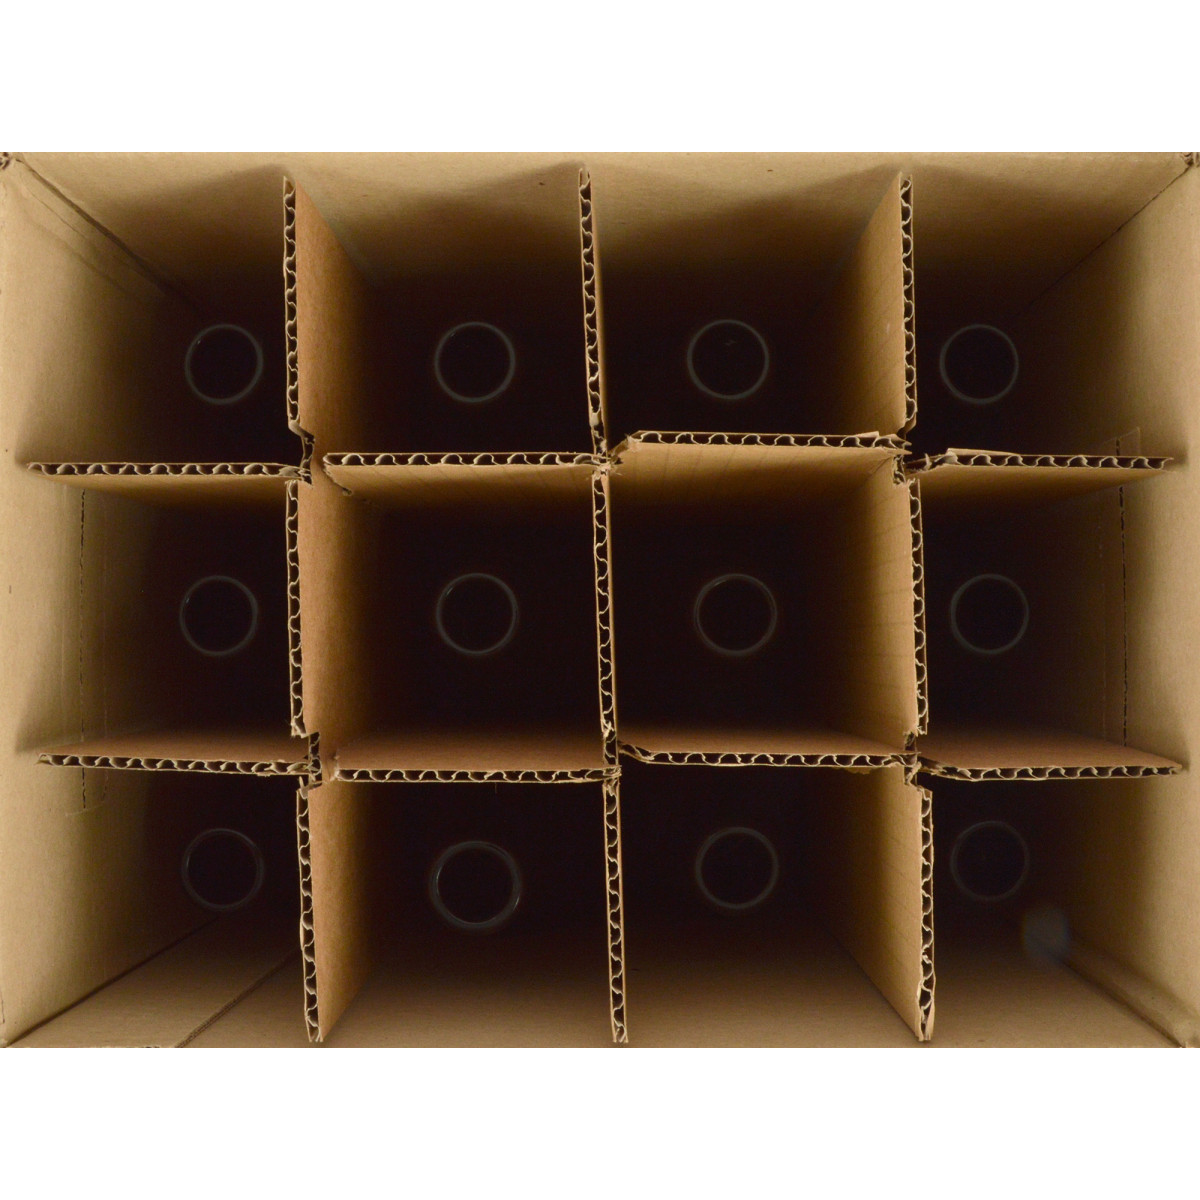 Bierflasche Longneck 50 cl, braun, 26 mm, Karton 12 St.